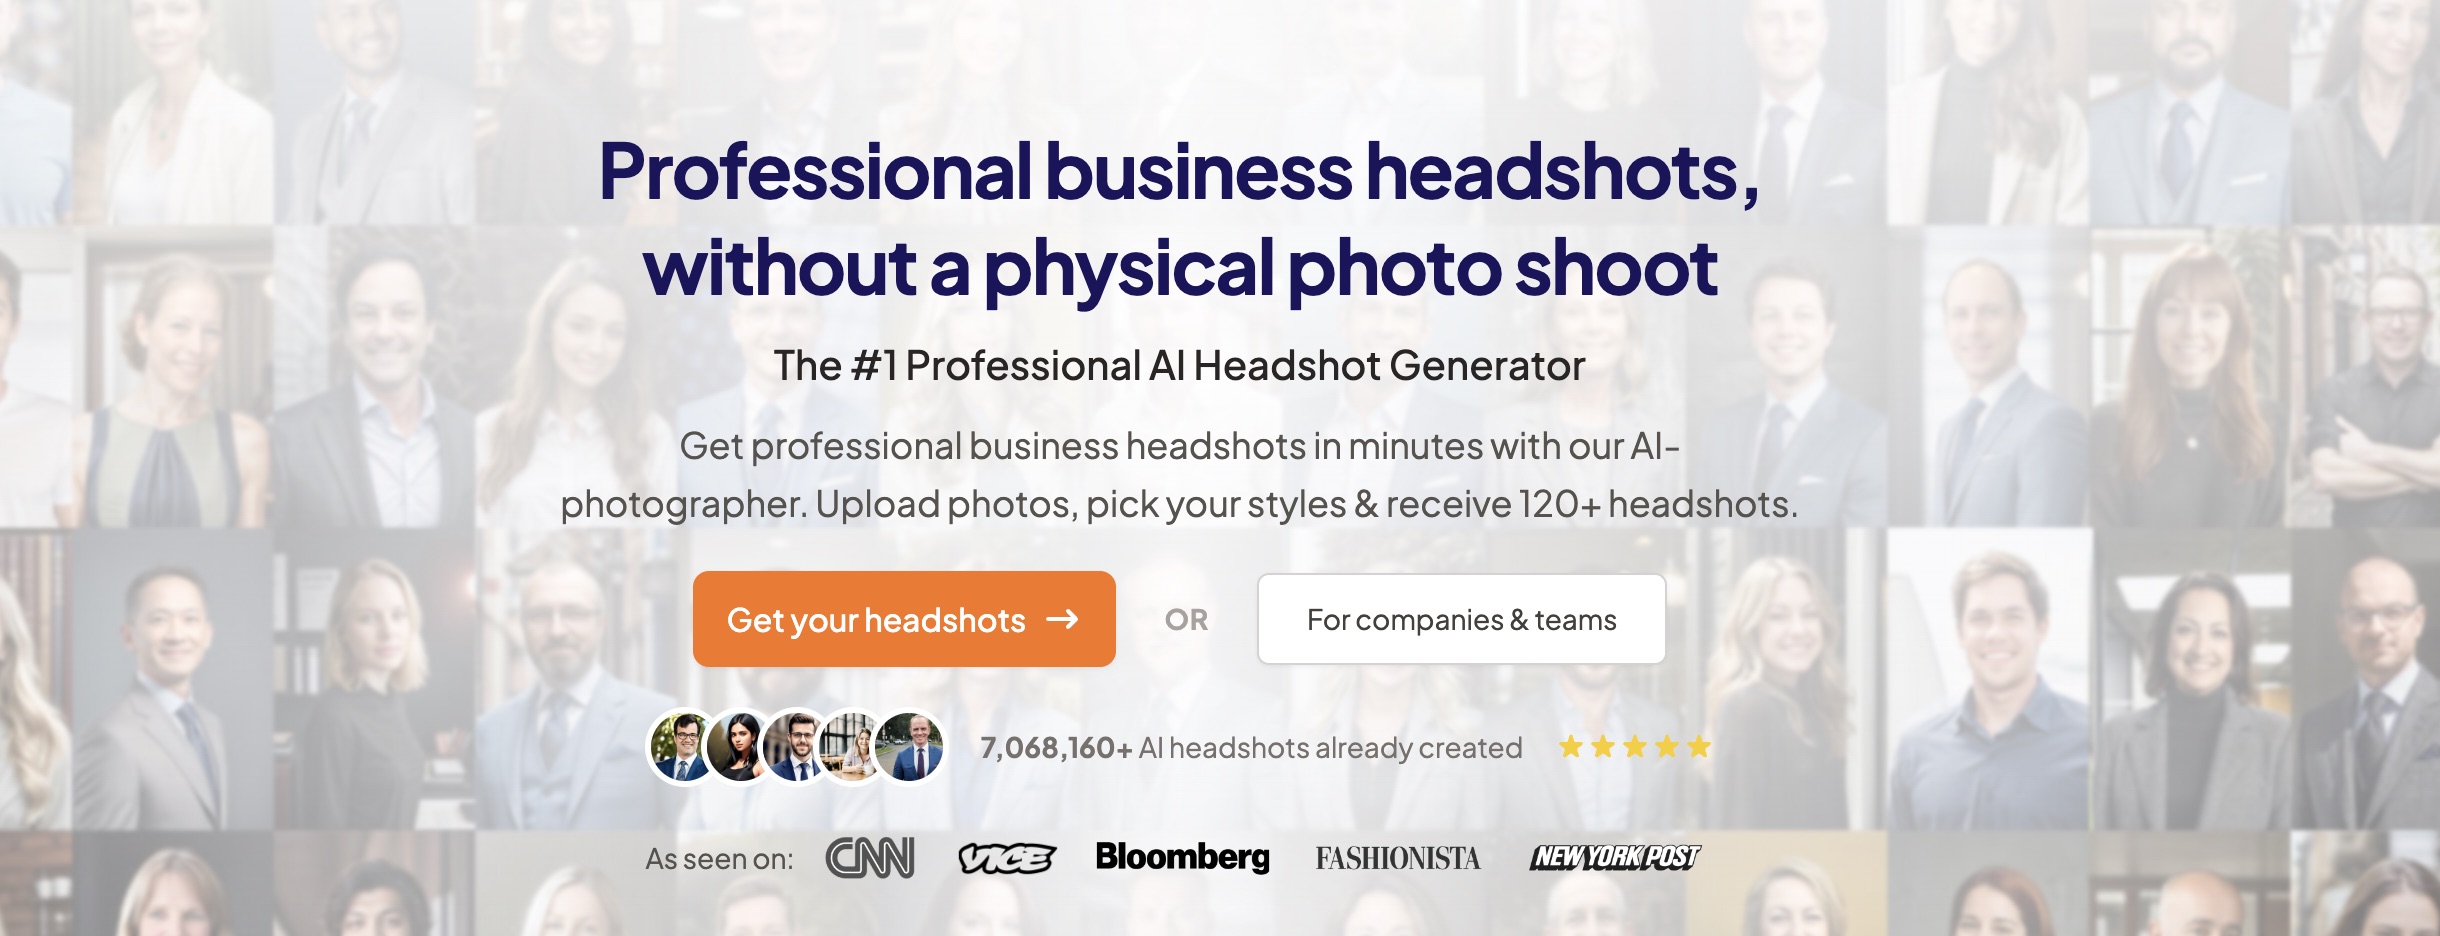 HeadshotPro: AI-powered headshot generator